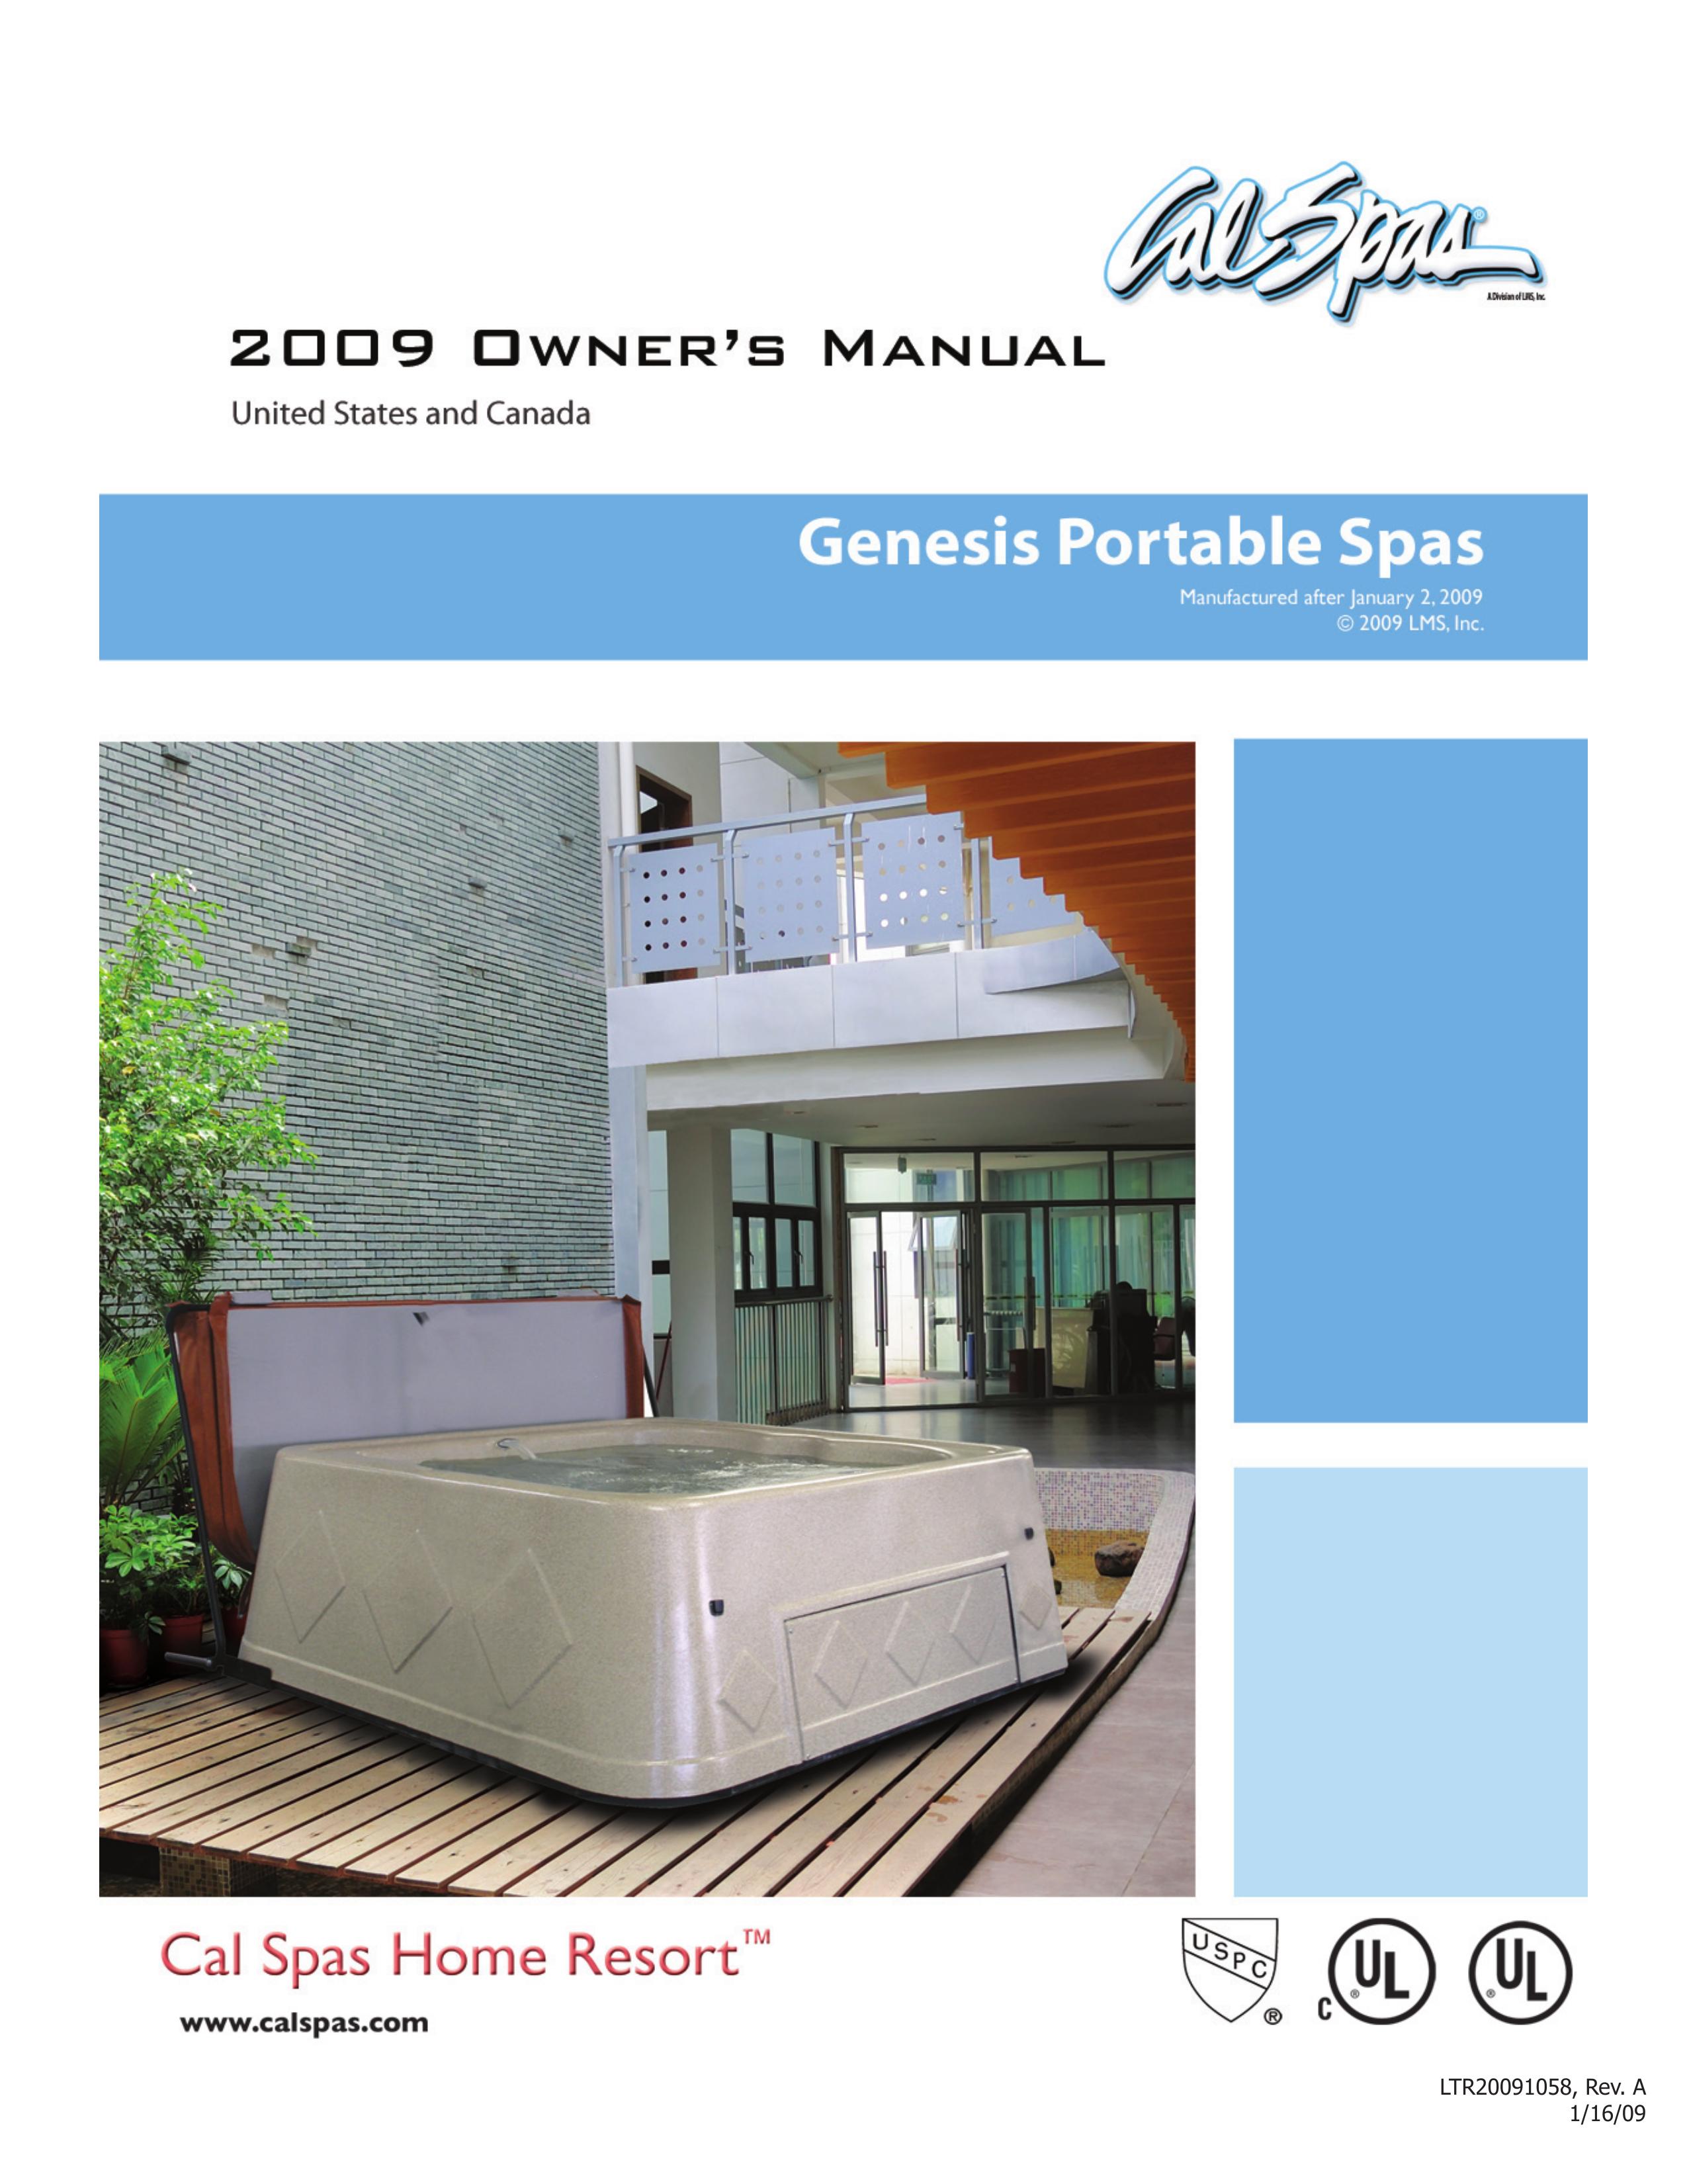 Cal Spas Genesis Portable Spa Hot Tub User Manual